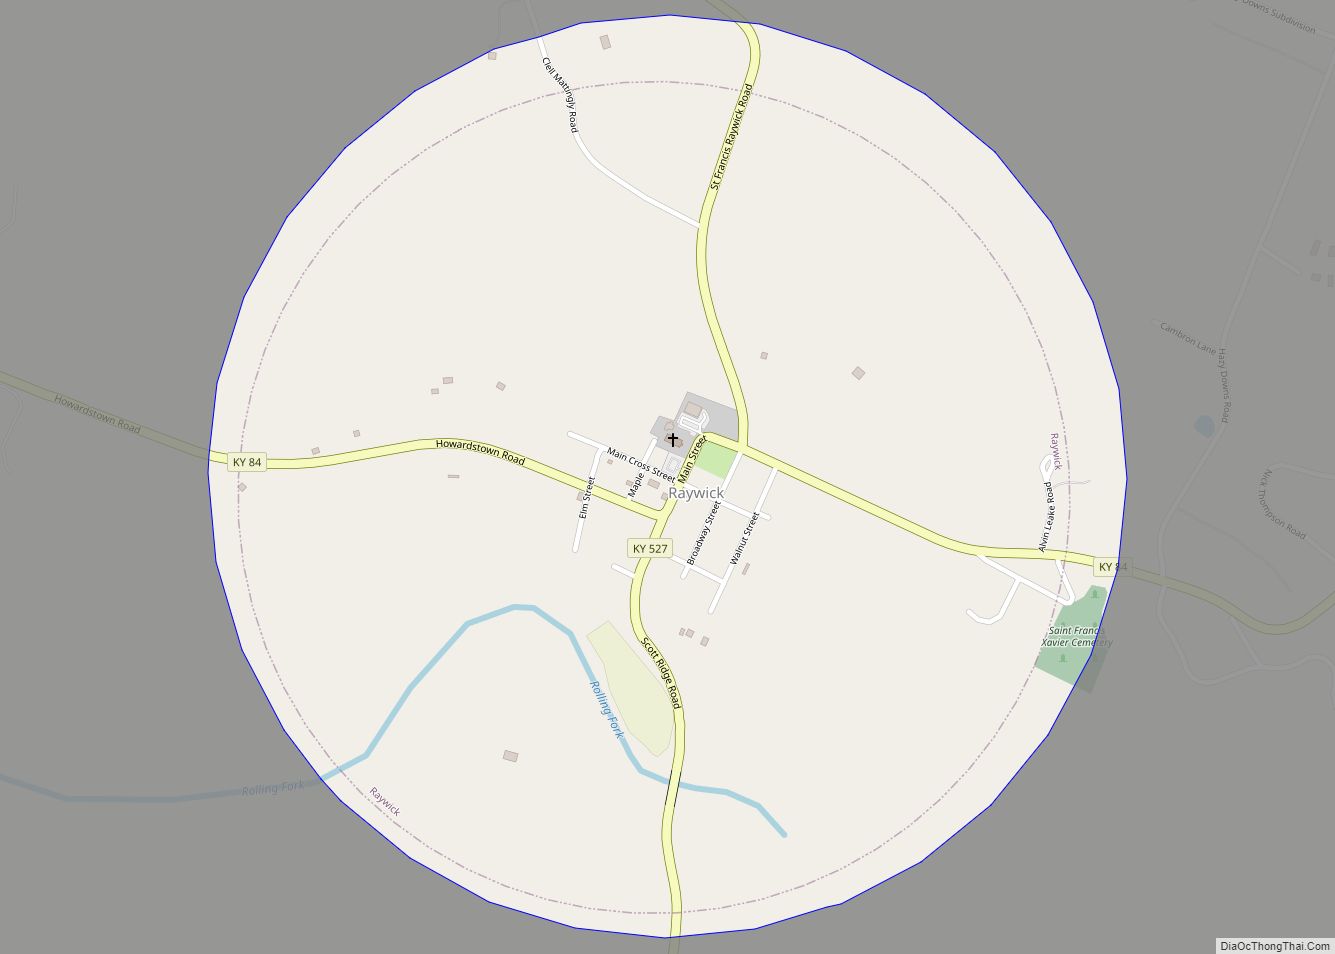 Map of Raywick city